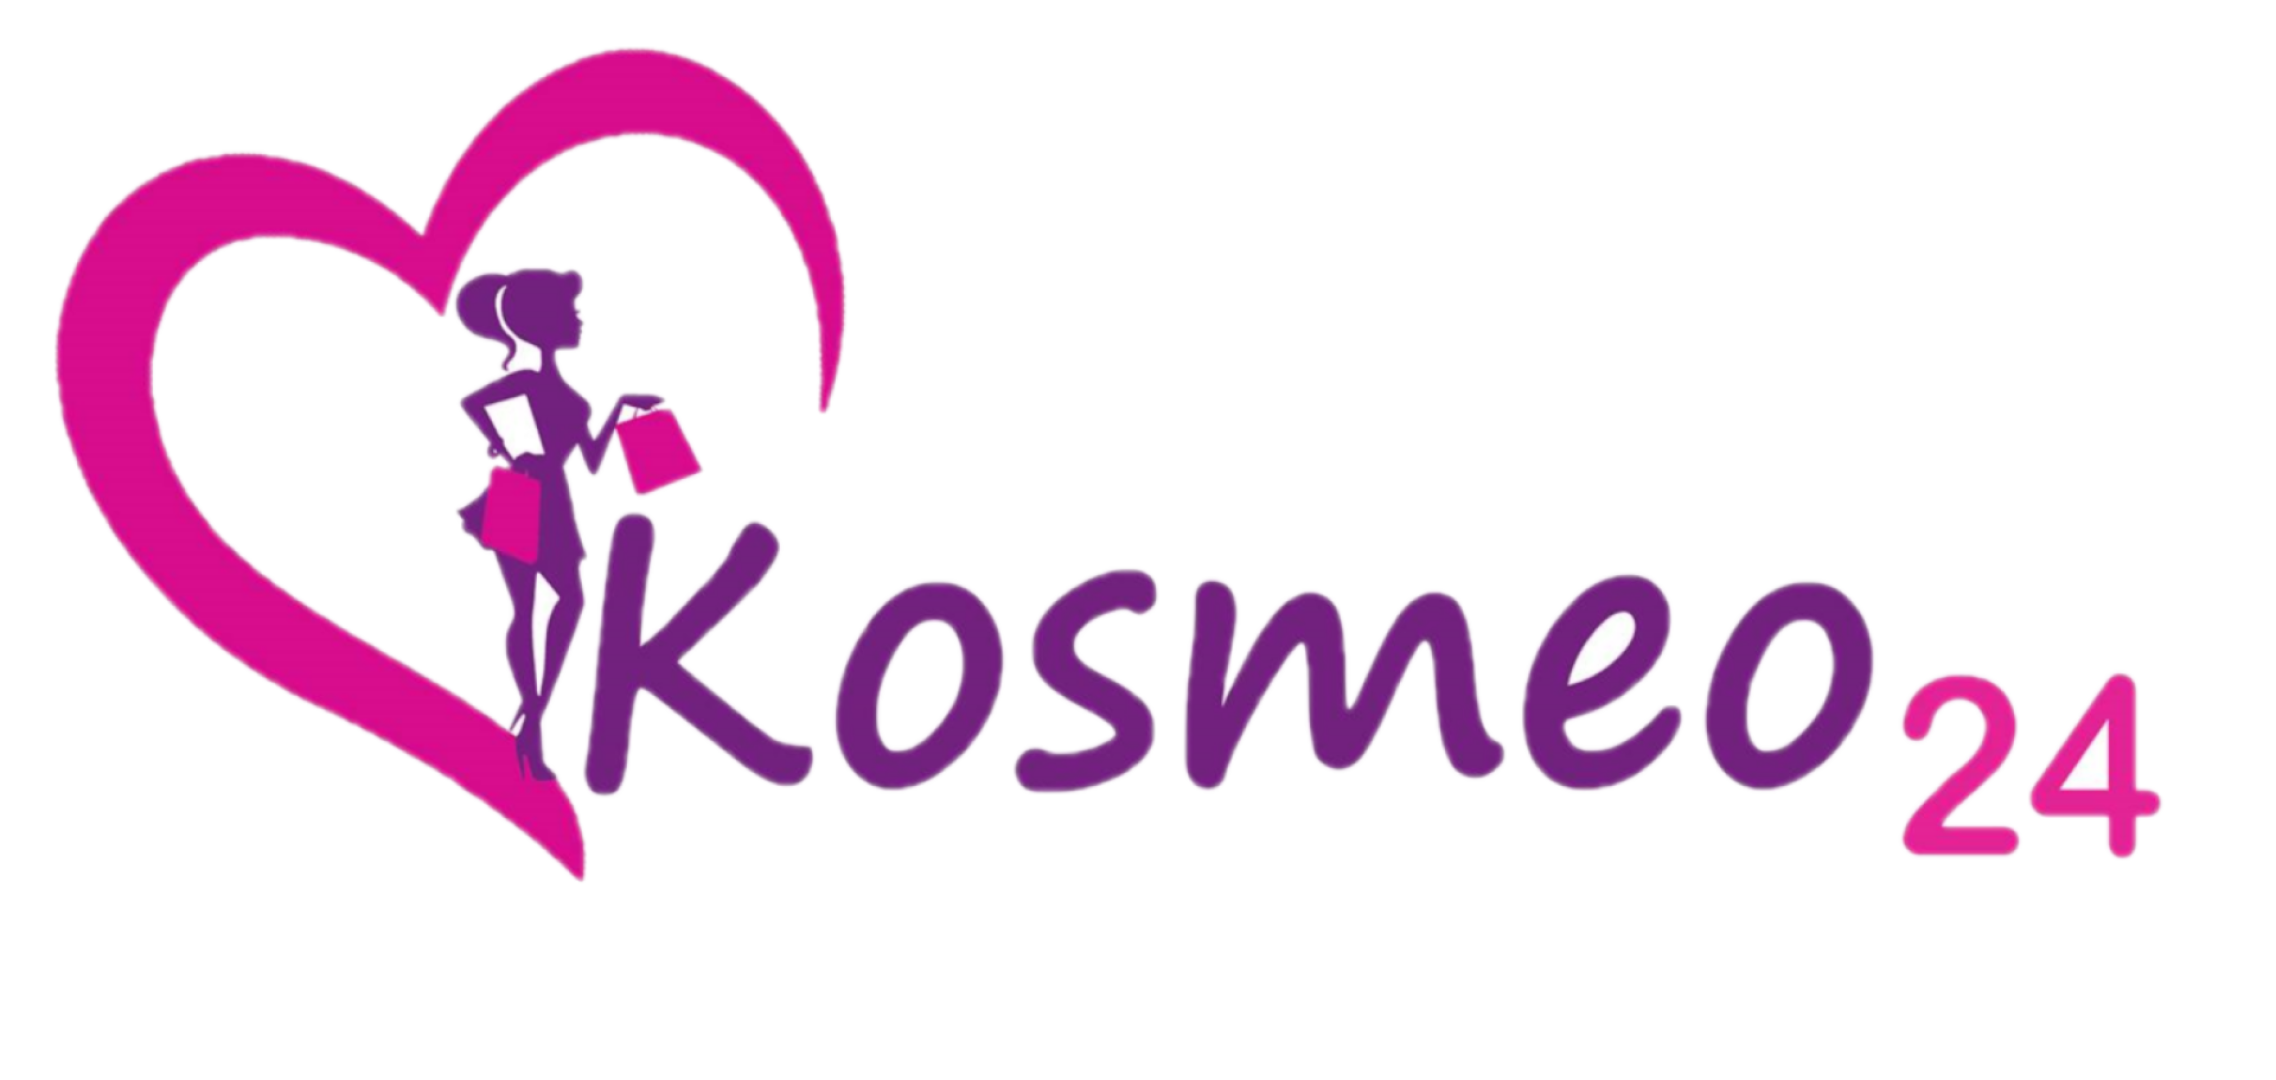 www.kosmeo24.pl